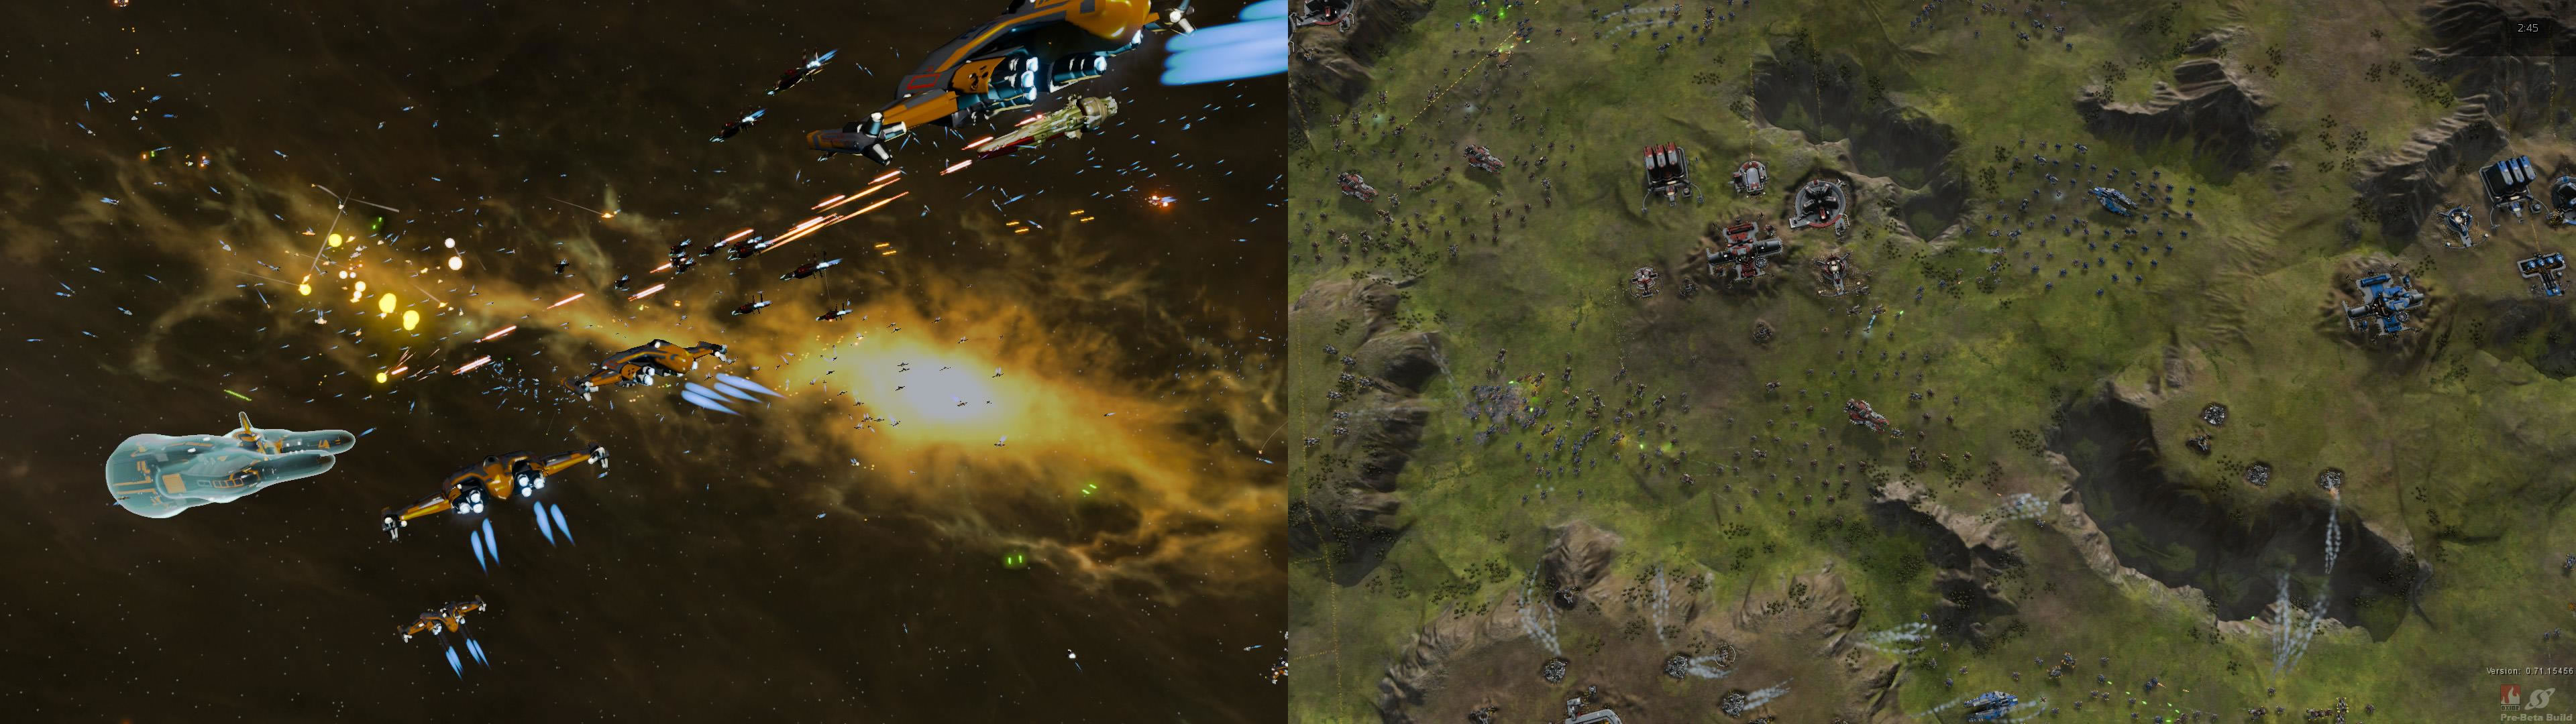 画像左が『Star Swarm』。ユニット数4000以上をうごかし、爆発・ビーム・発射光にいたるまで個別で光源処理する。画像右は本作ベンチマーク。光源処理は先と同様だ。大量ユニットの管理・描画に特化した。